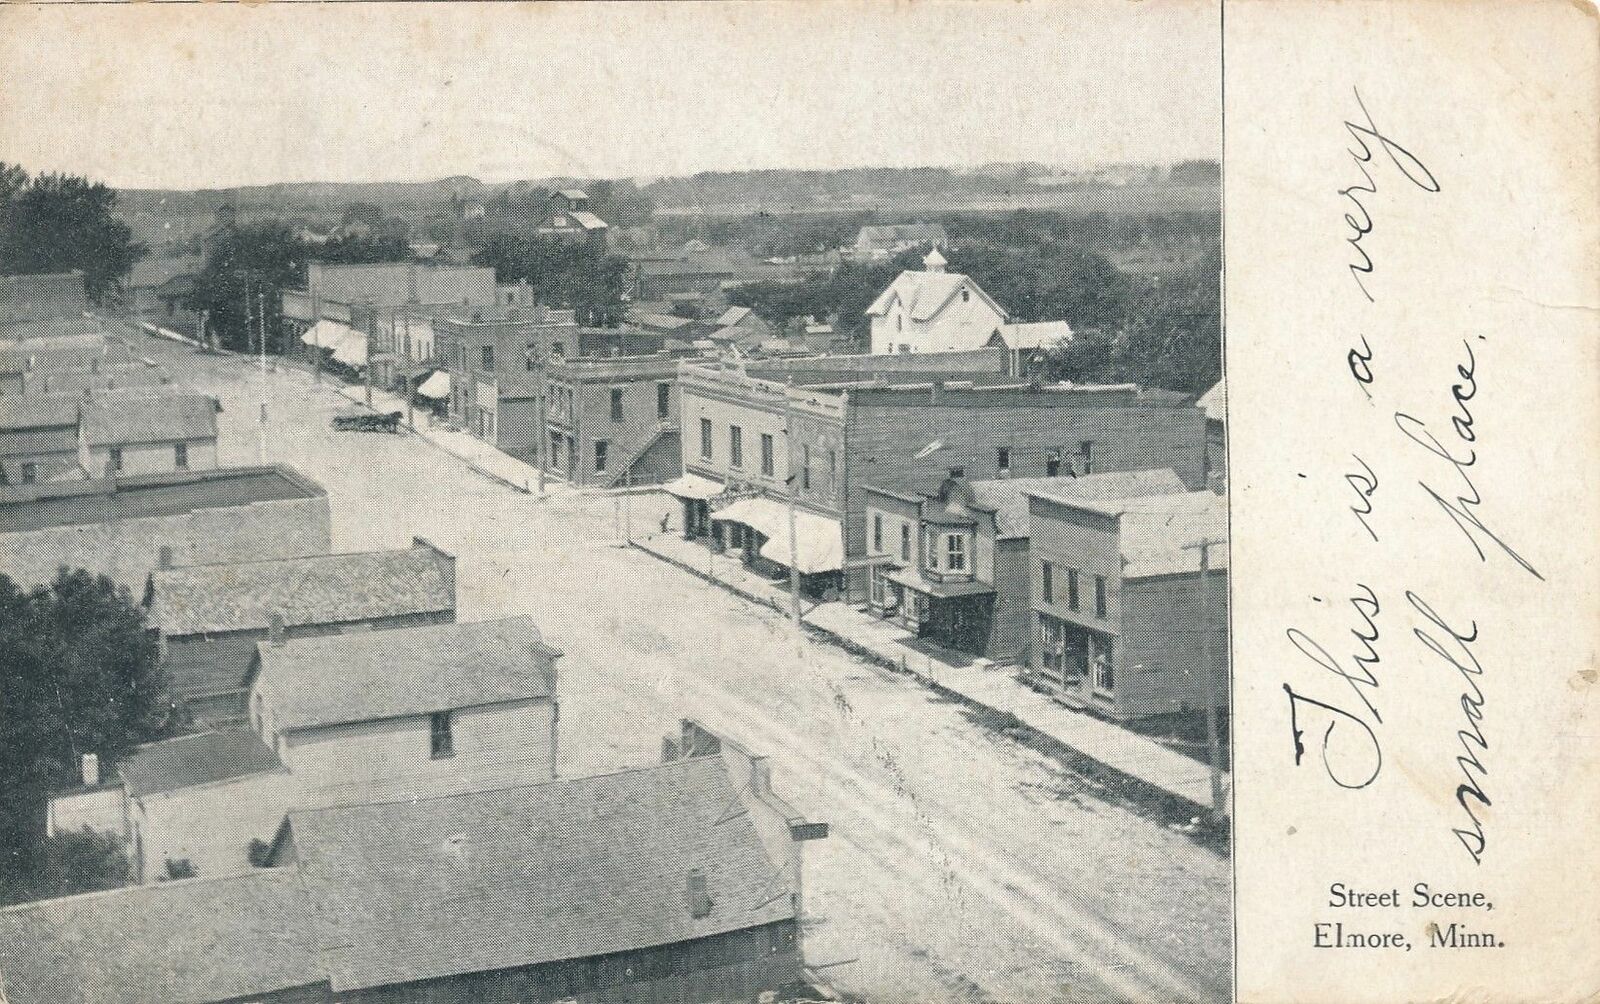 ELMORE MN - Street Scene - 1907